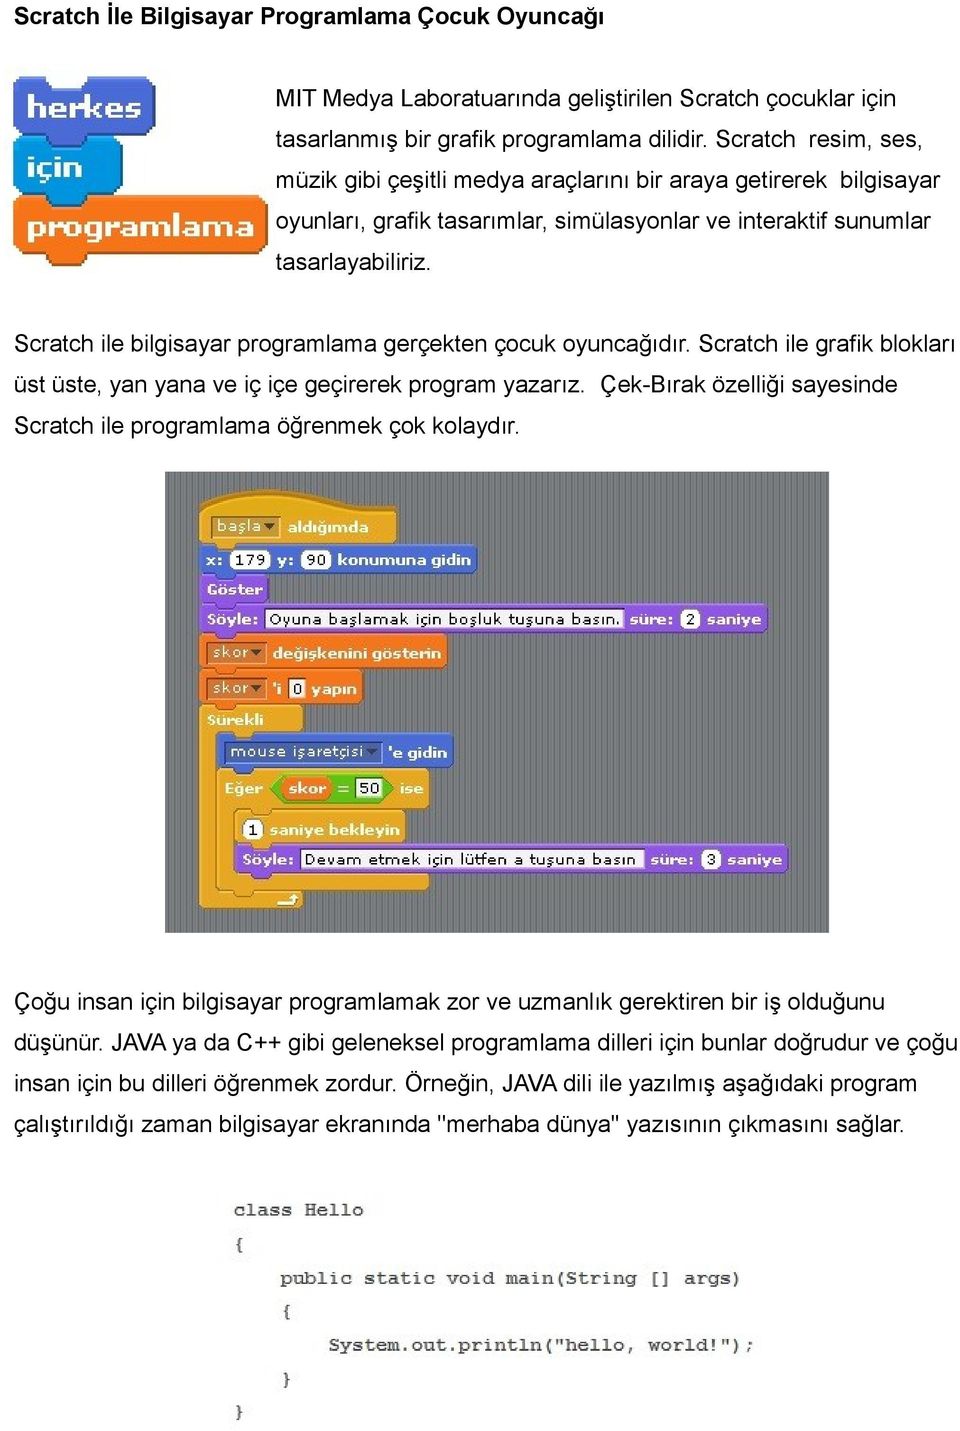 Scratch ile bilgisayar programlama gerçekten çocuk oyuncağıdır. Scratch ile grafik blokları üst üste, yan yana ve iç içe geçirerek program yazarız.